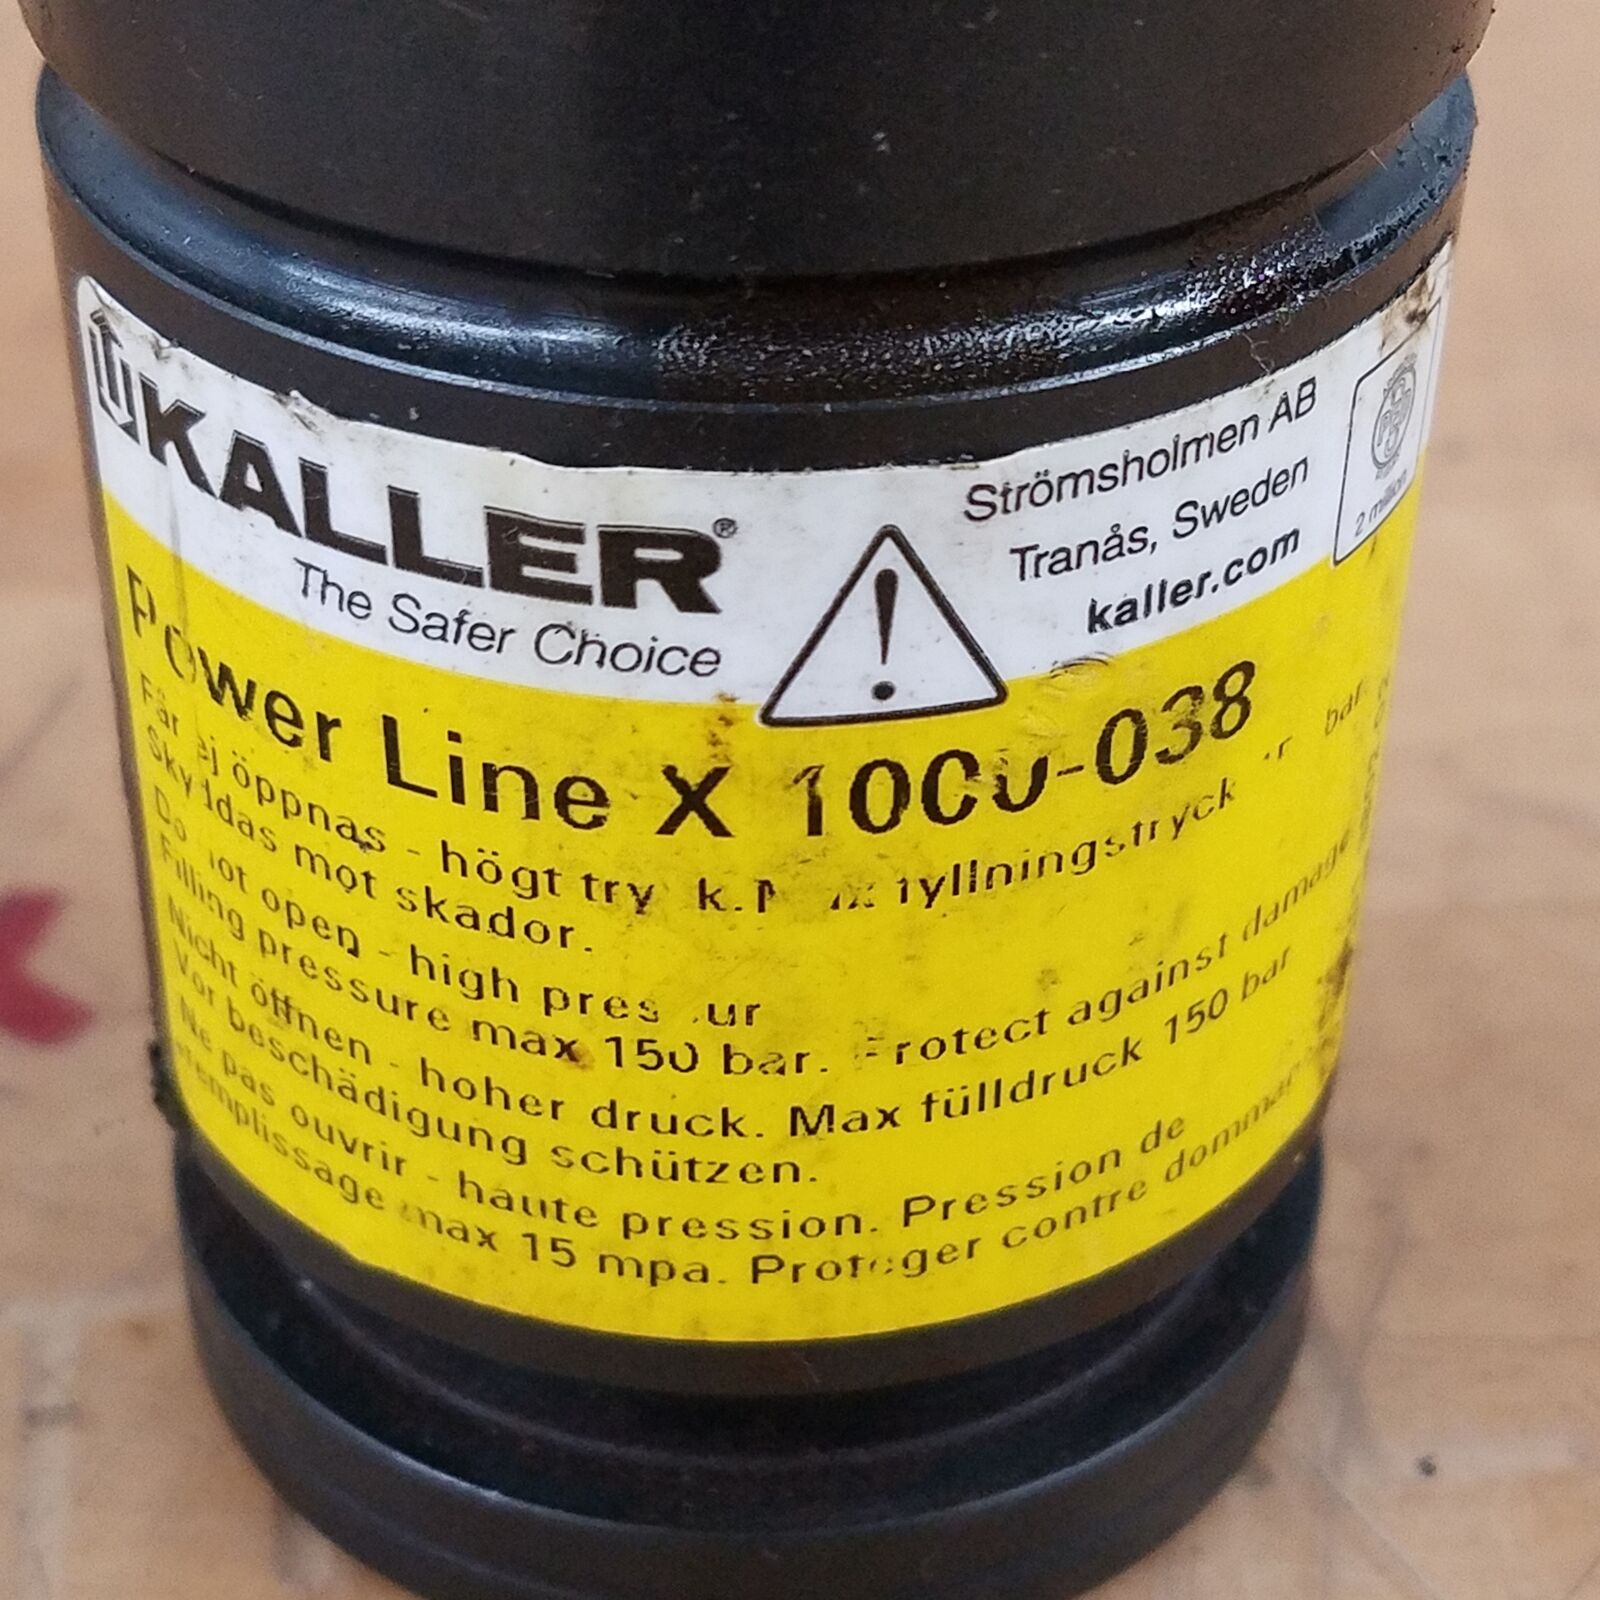 Kaller Power Line X 1000-038 Sealed Nitrogen Gas Spring - USED Świetna wartość, zapewnienie jakości